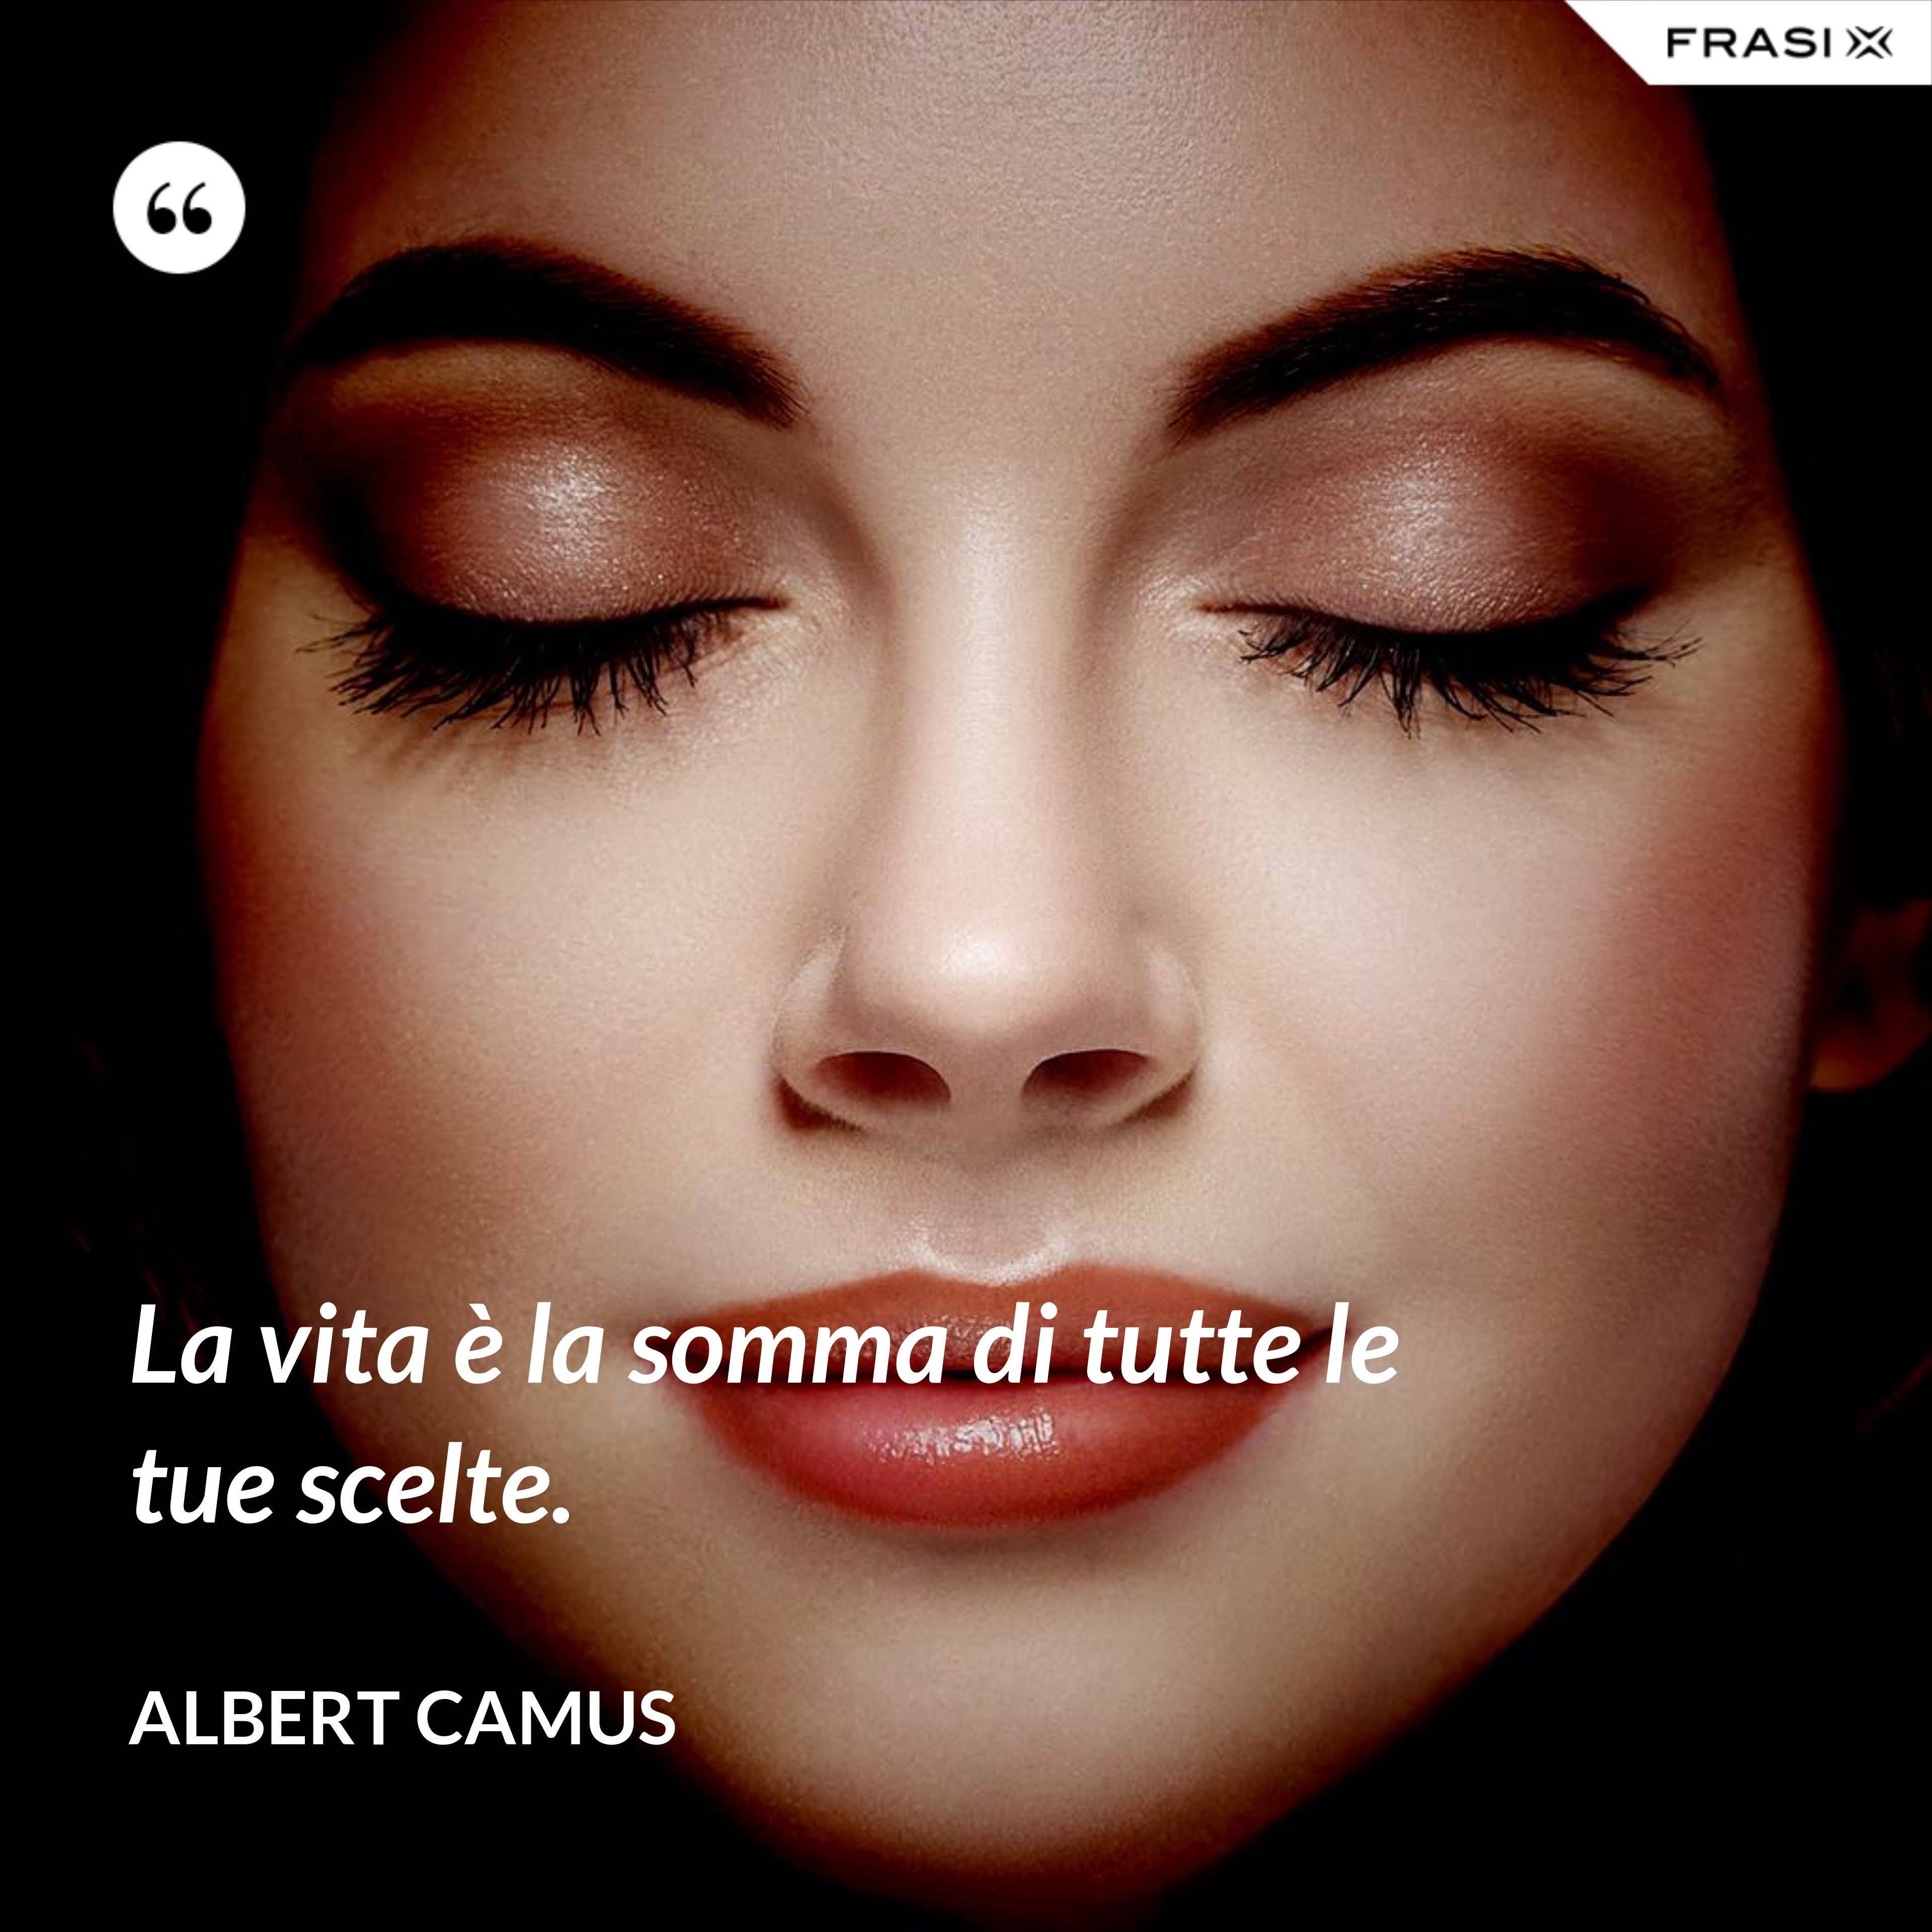 La vita è la somma di tutte le tue scelte. - Albert Camus